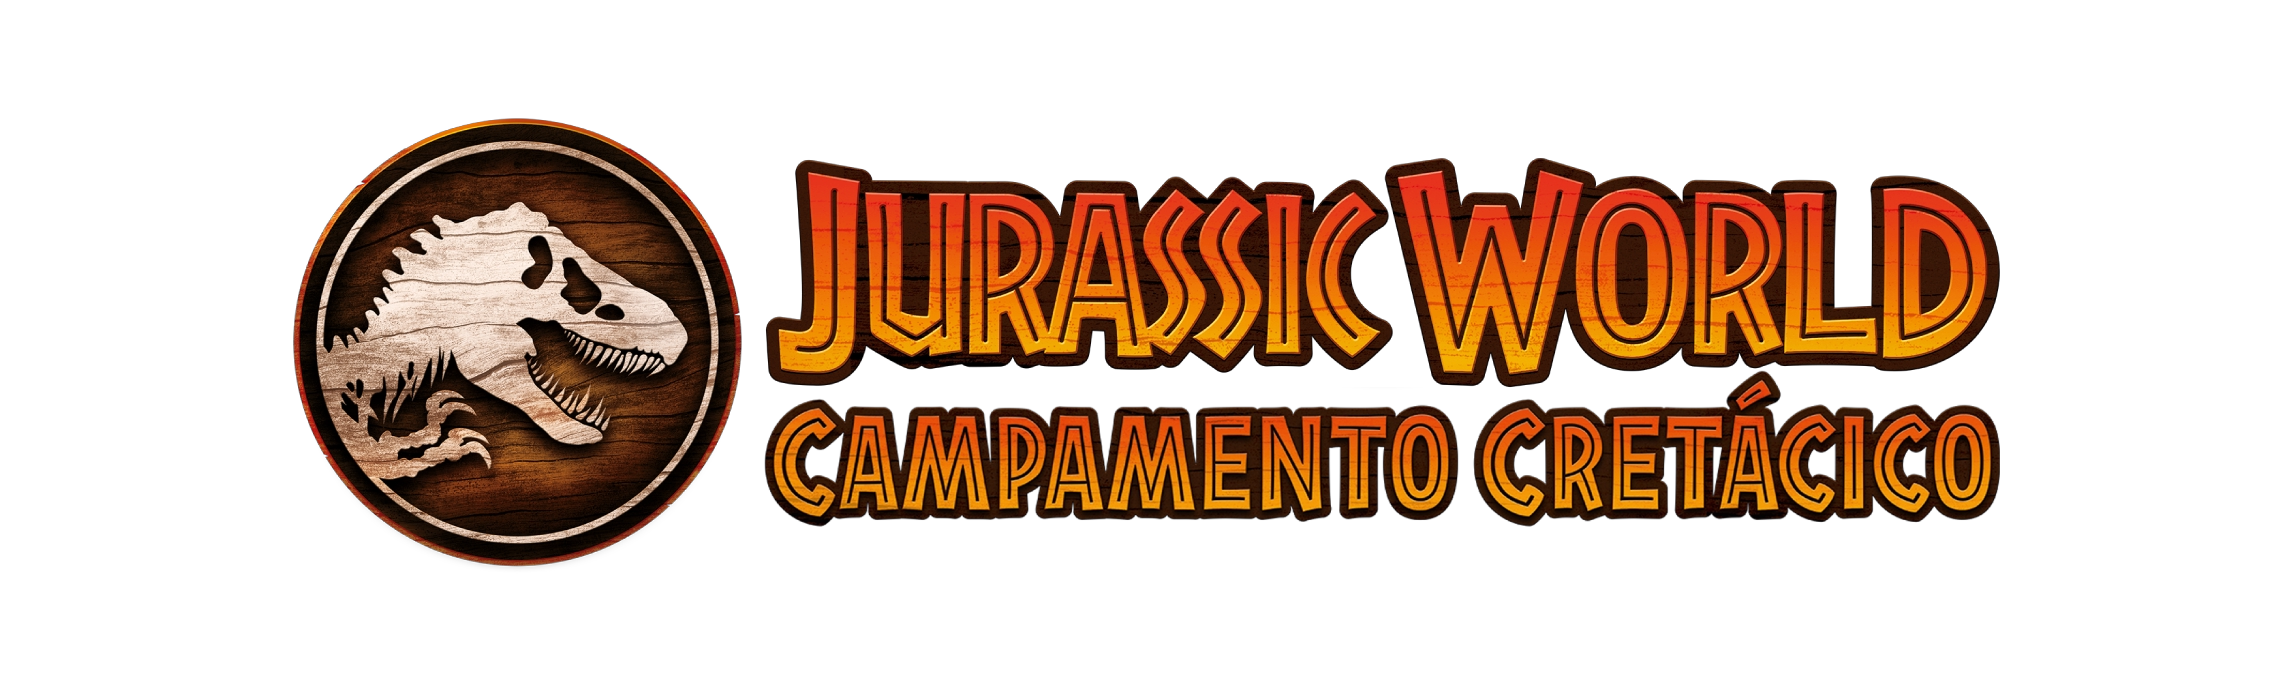 Jurassic World Campamento Cretácico Logo